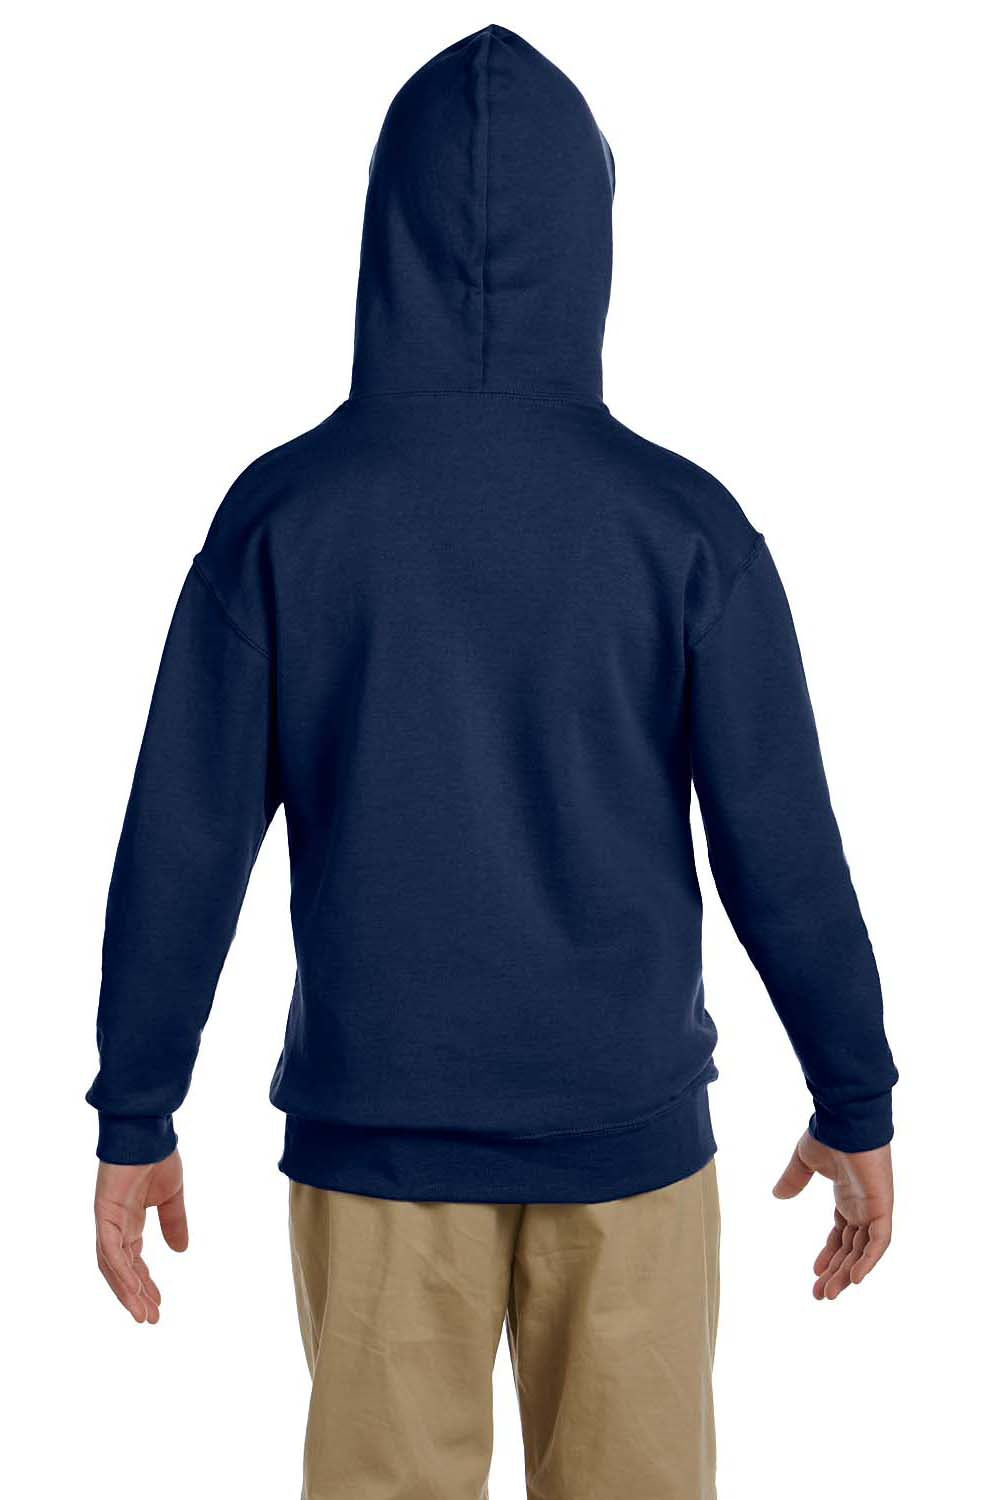 Jerzees 996Y Youth NuBlend Fleece Hooded Sweatshirt Hoodie Navy Blue Back